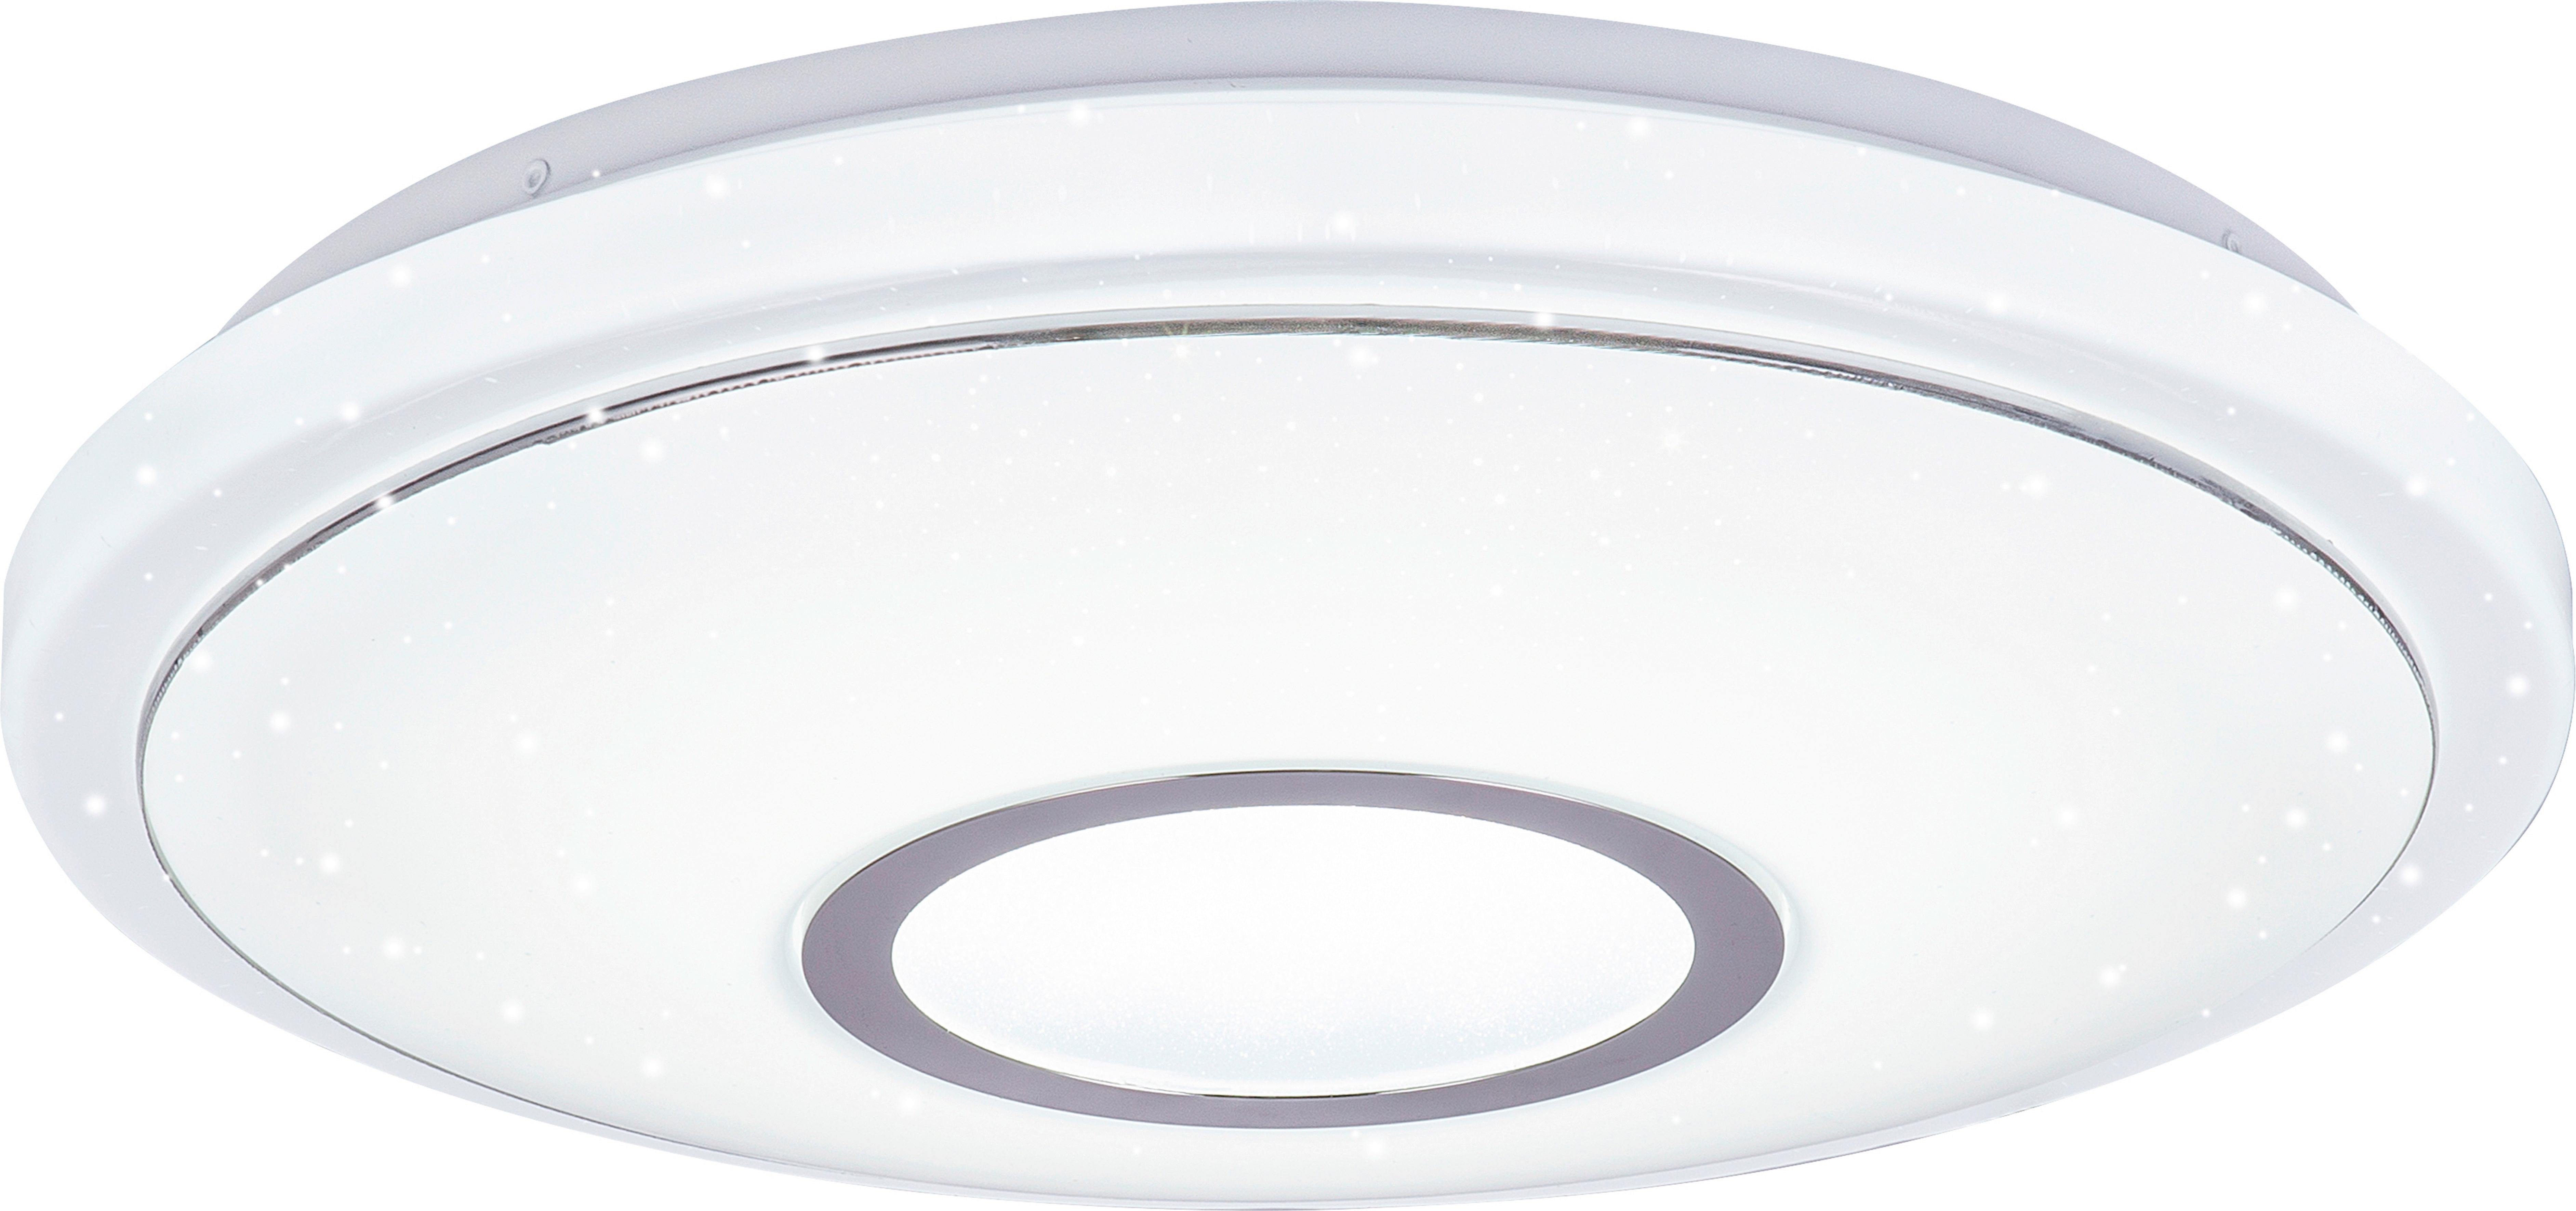 LED-Deckenleuchte Ross max. 16 Watt - Weiß, KONVENTIONELL, Kunststoff/Metall (40/9cm) - Modern Living